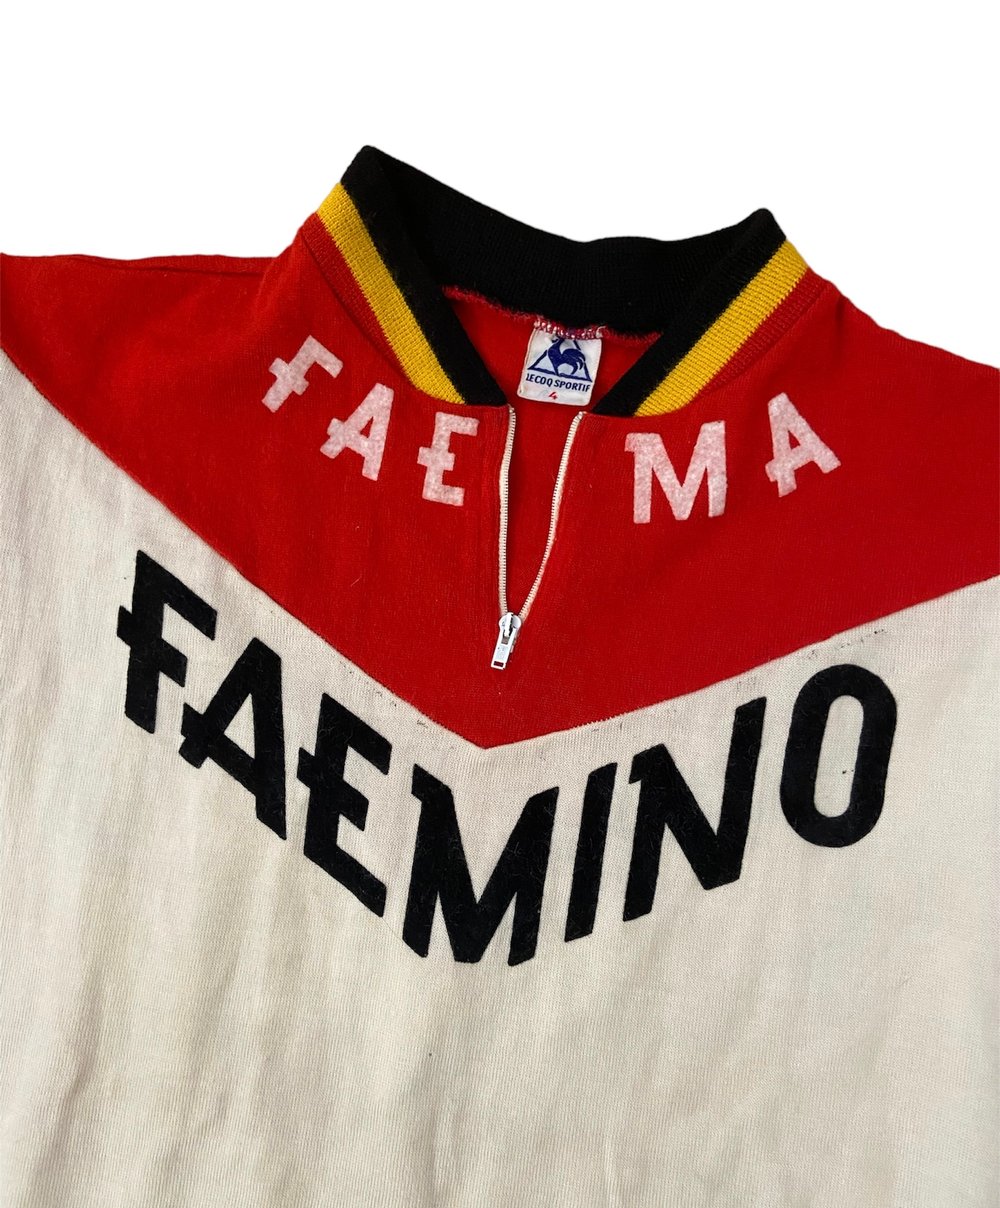 1970 - Faemino-Faema - Tour de France